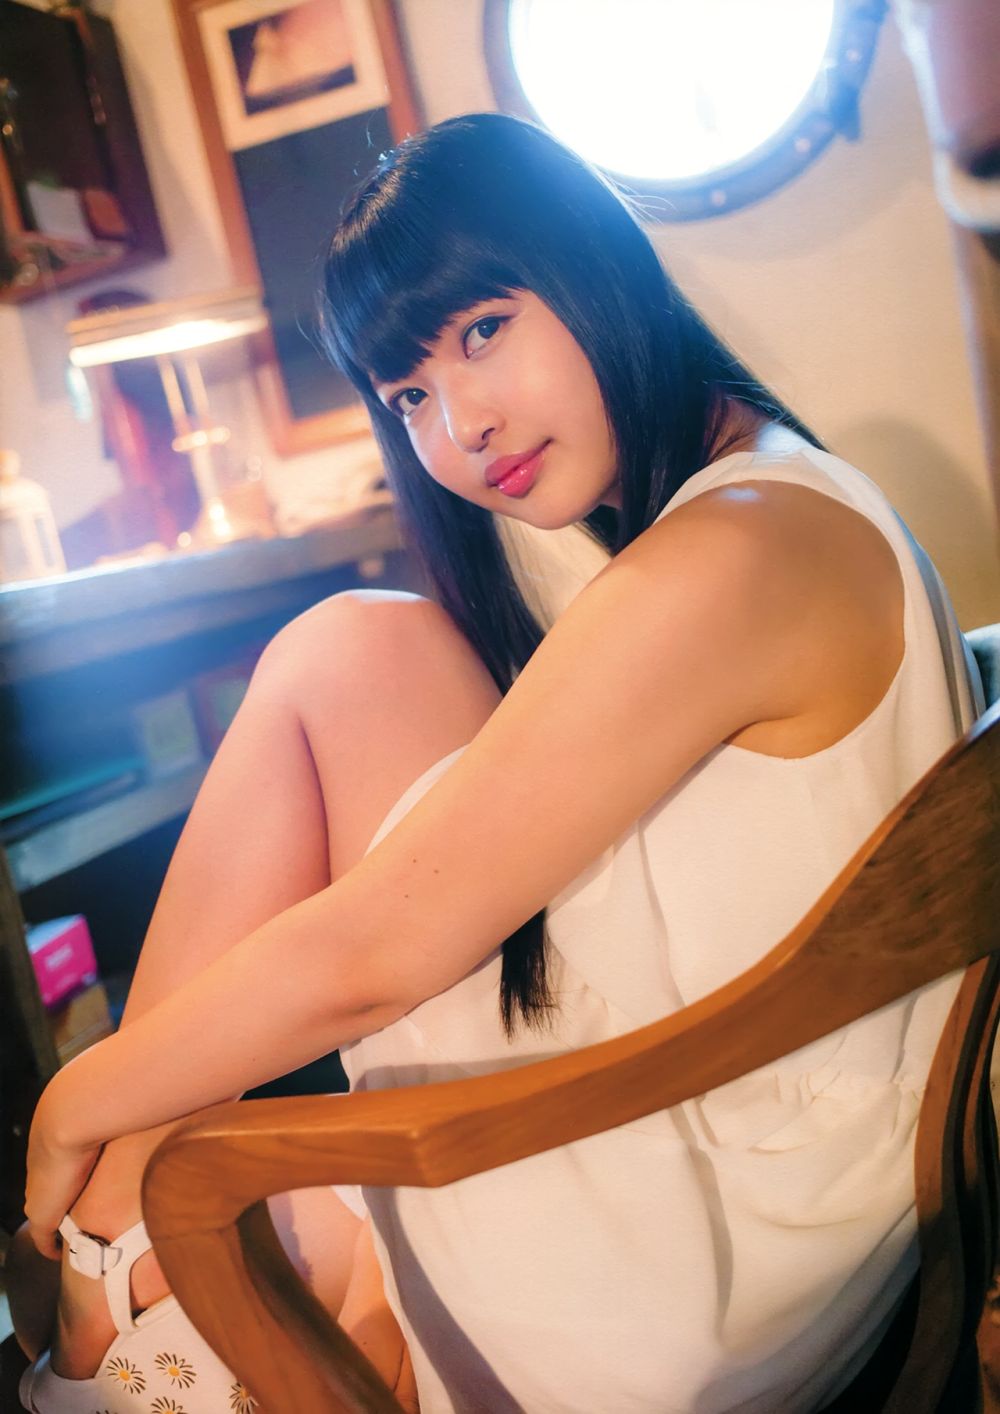 Yuka Otsubo Sexy and Hottest Photos , Latest Pics